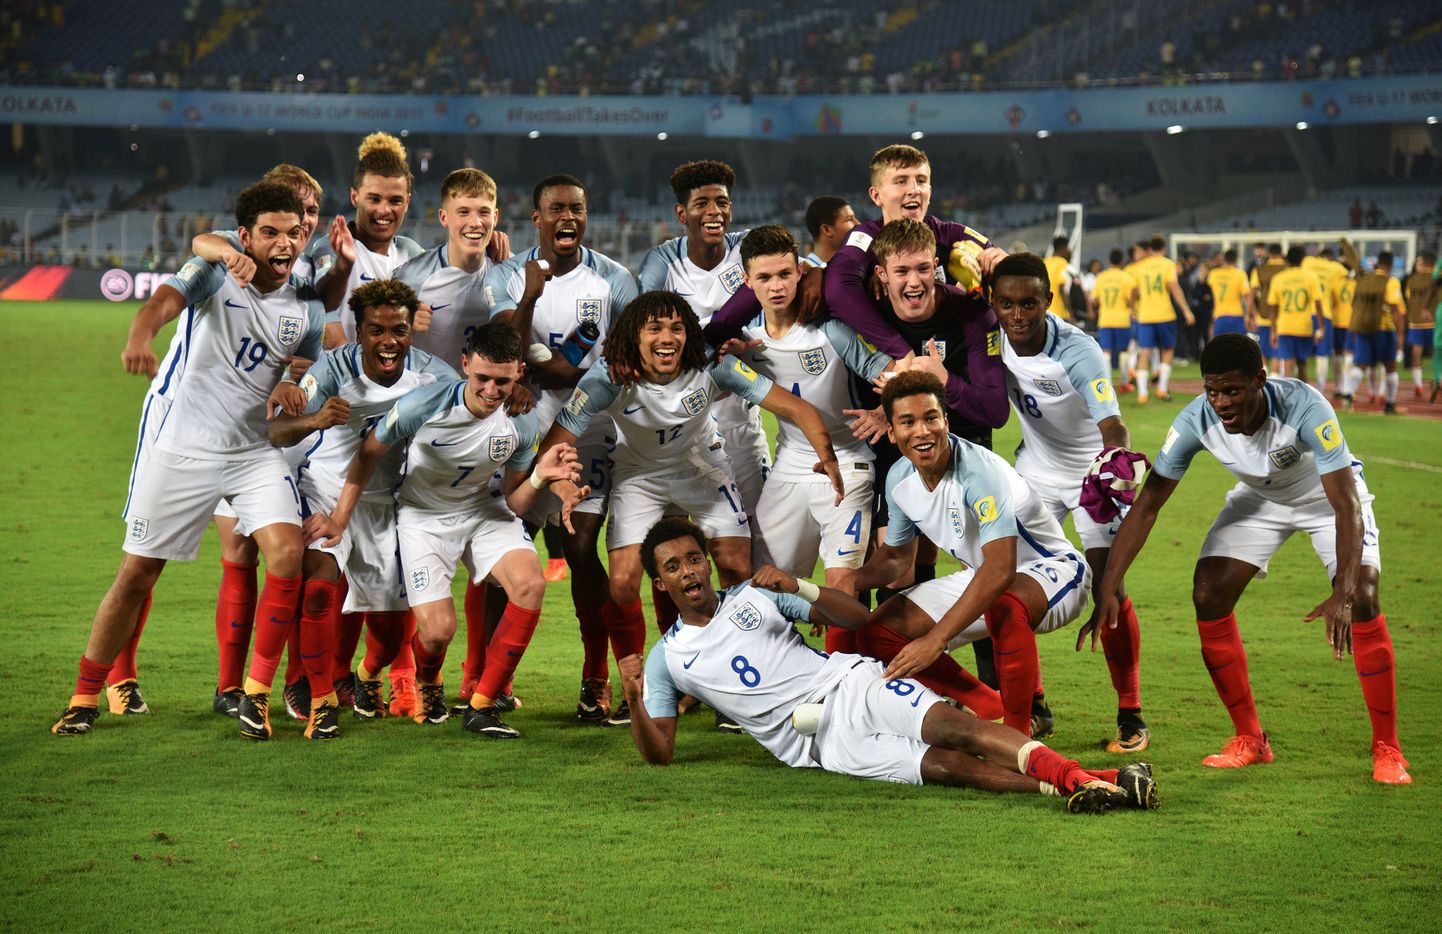 Inglismaa U17 koondis alistas MMi poolfinaalis 3:1 Brasiilia.